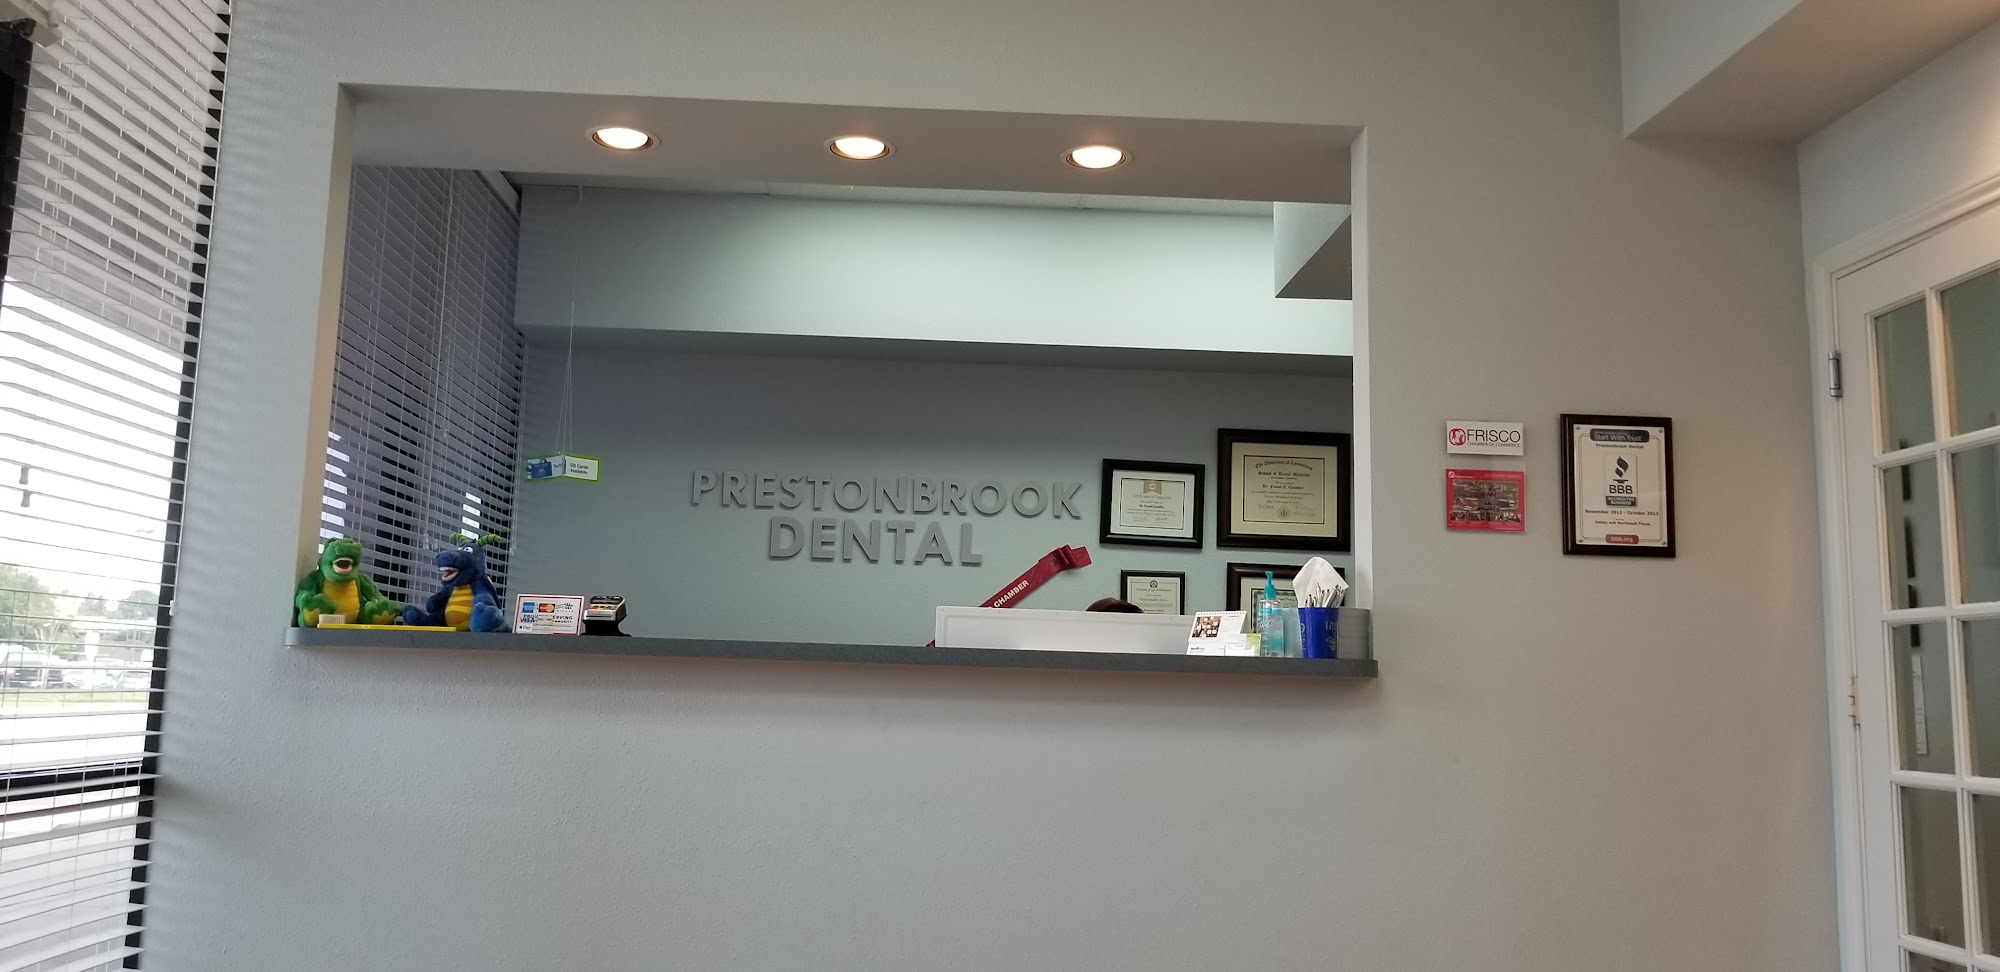 Prestonbrook Dental